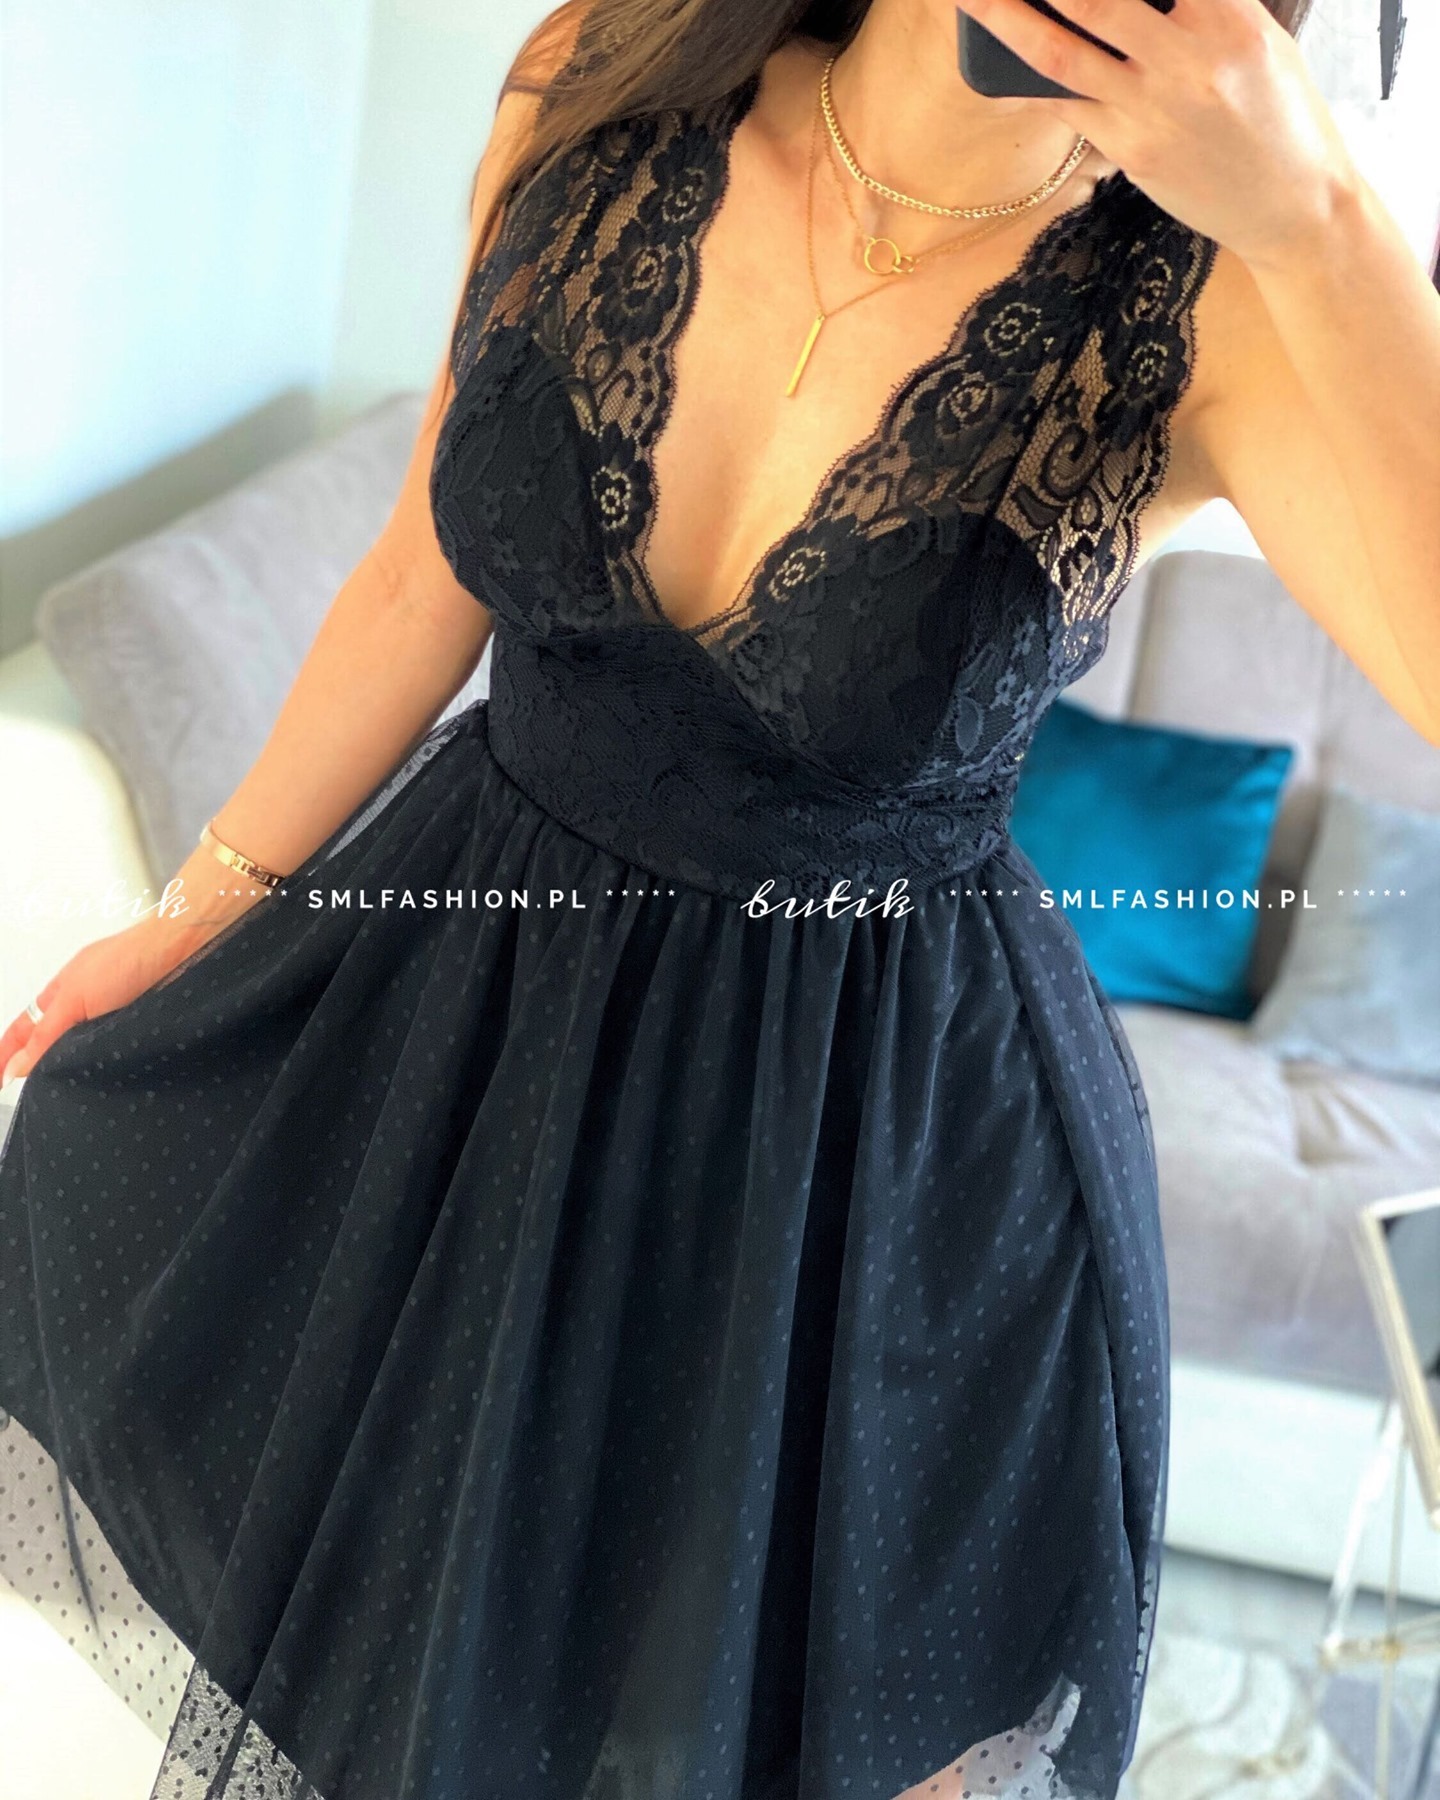 Marsala czarna sukienka koronkowa z tiulem długości midi oraz głębokim dekoltem - butik online smlfashion.pl